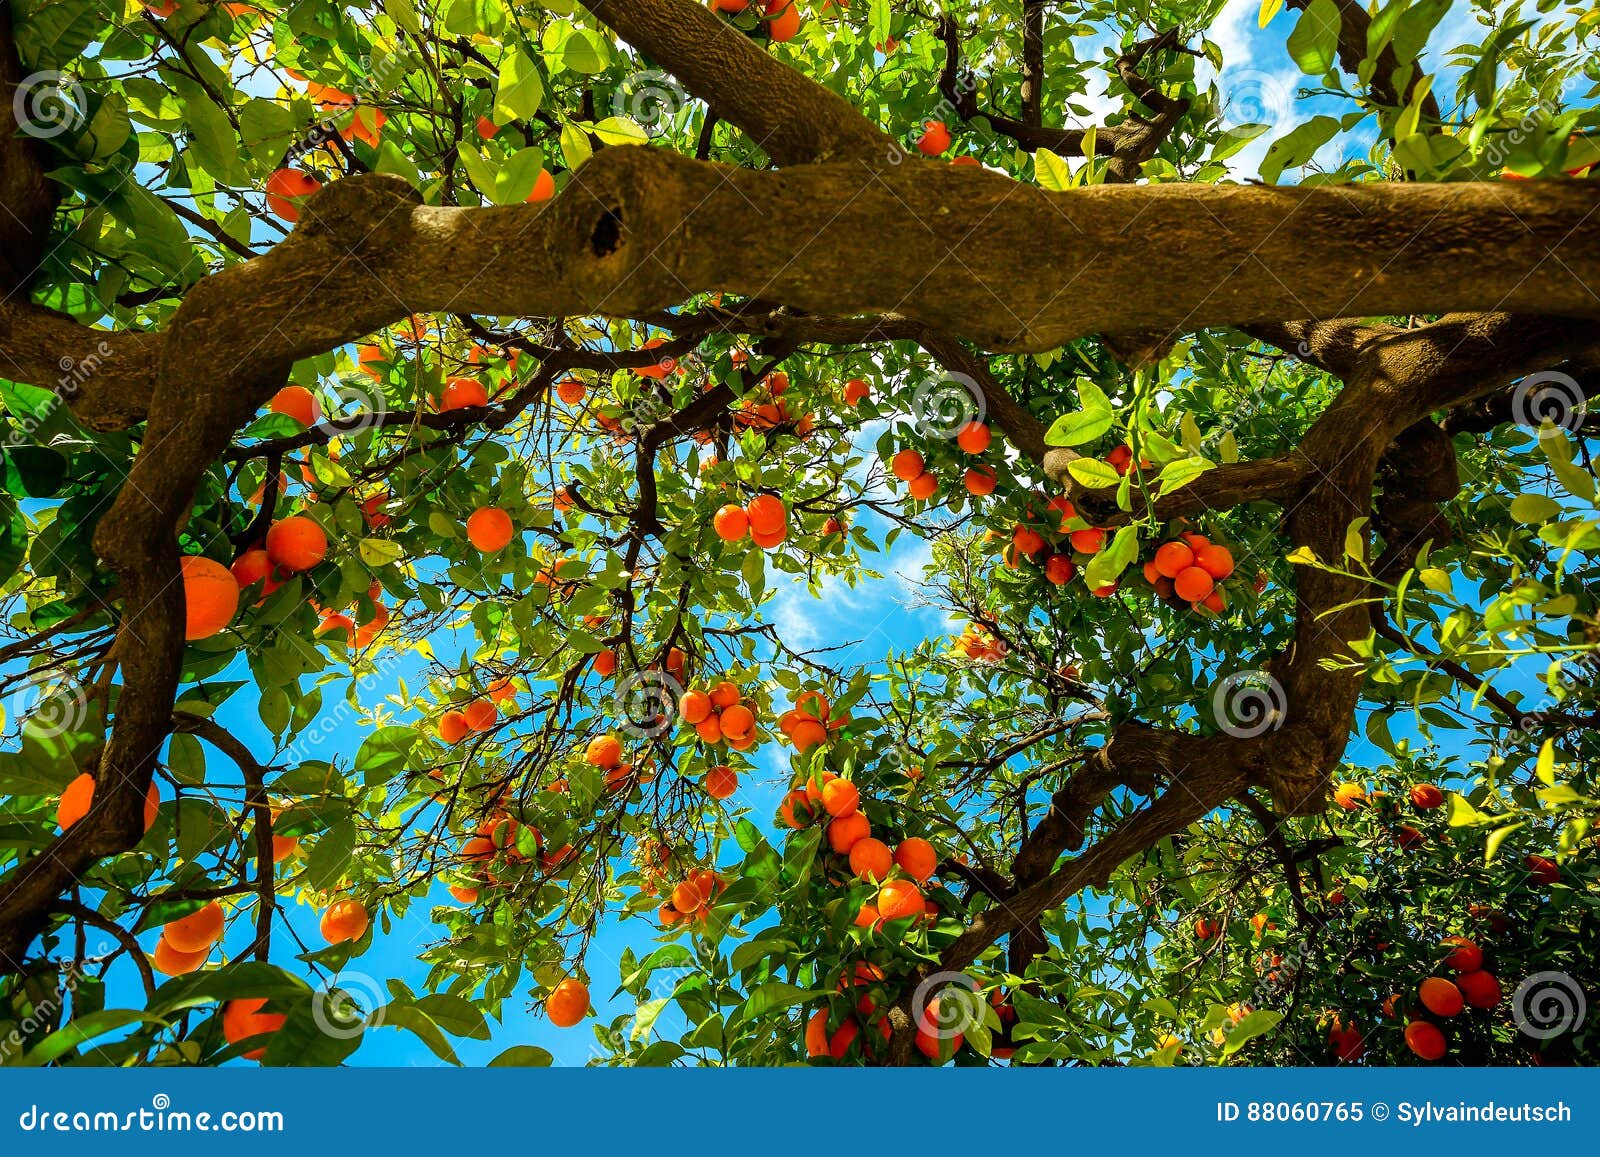 orange tree in seville spain